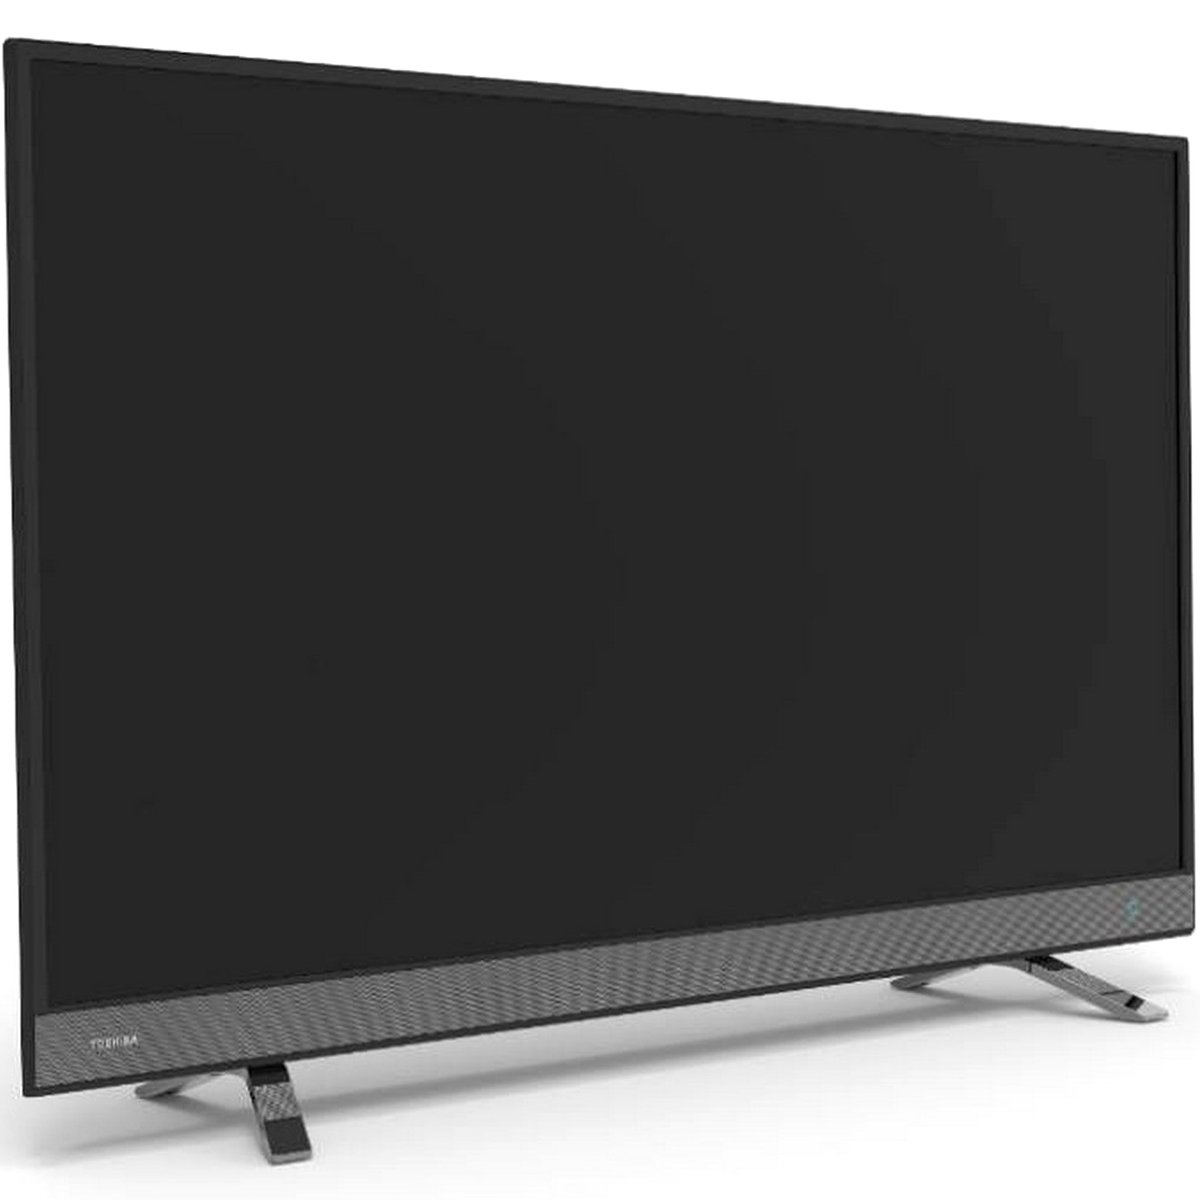 Toshiba Full HD Smart LED TV 55L5750EE 55'